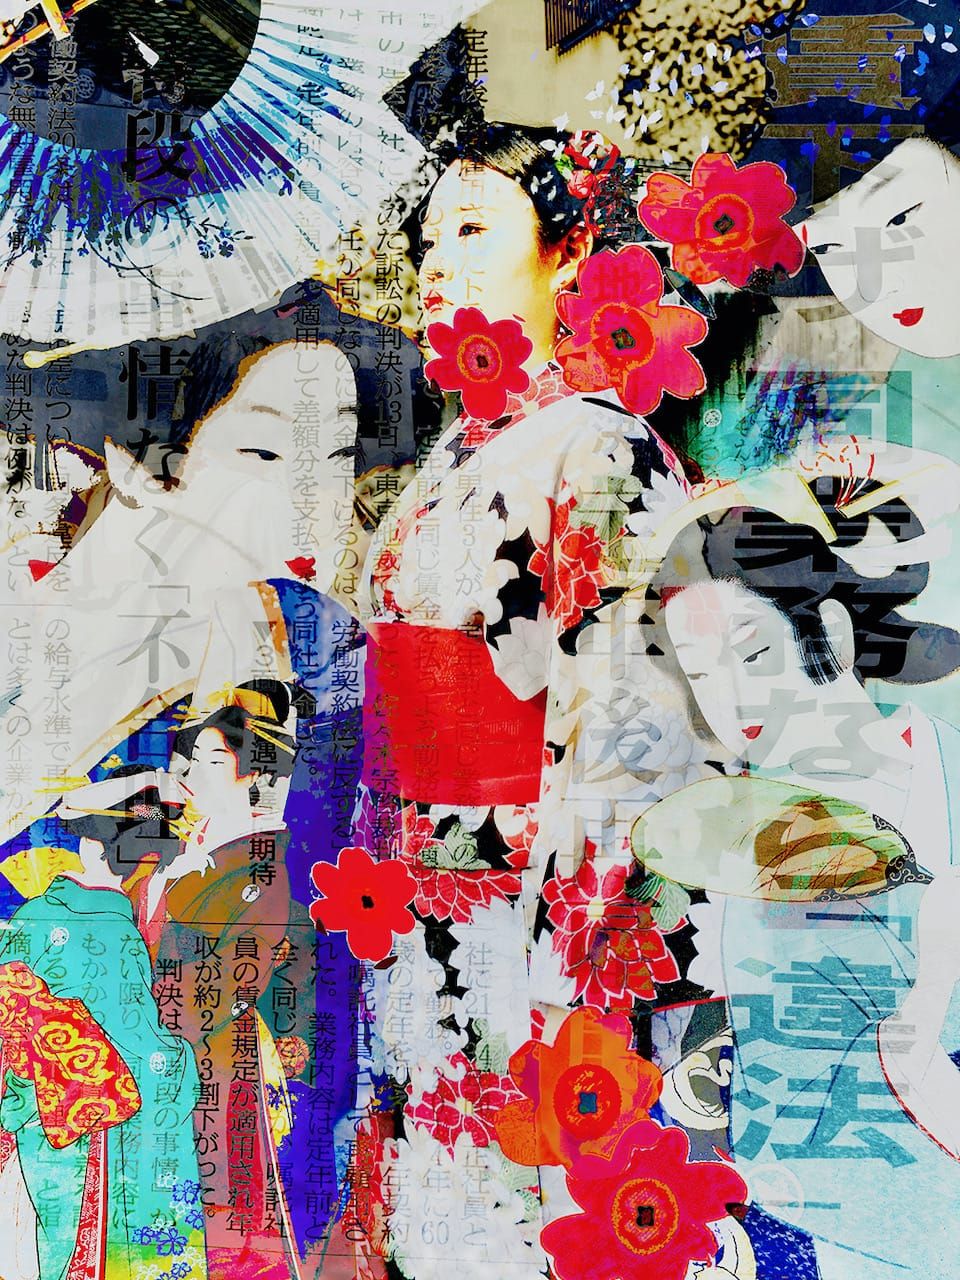 Ute Bruno Collage digitale Vecchie illustrazioni Donne giapponesi in kimono sovrapposte a fiori e giornali